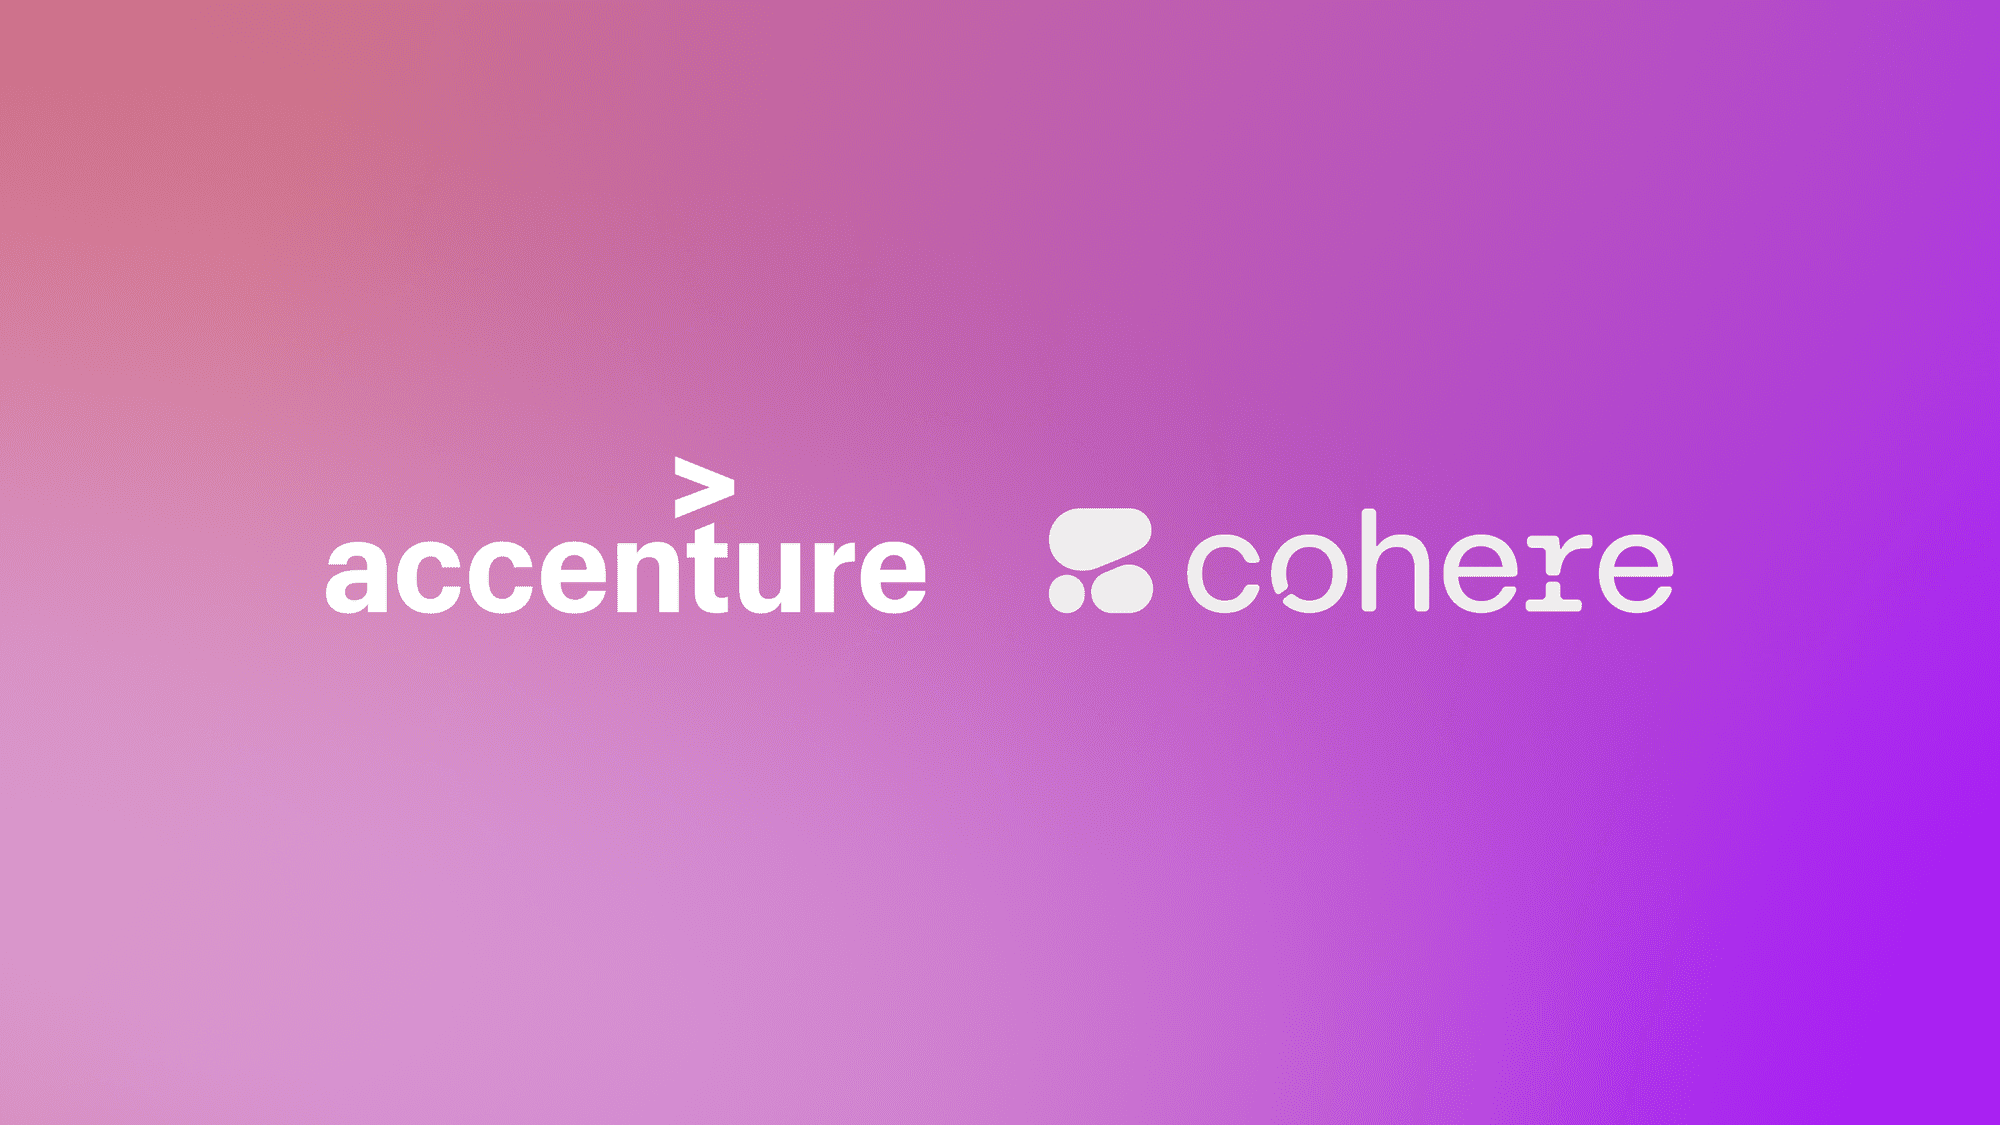 CohereとAccenture、組織におけるAI活用を促進するための提携を発表